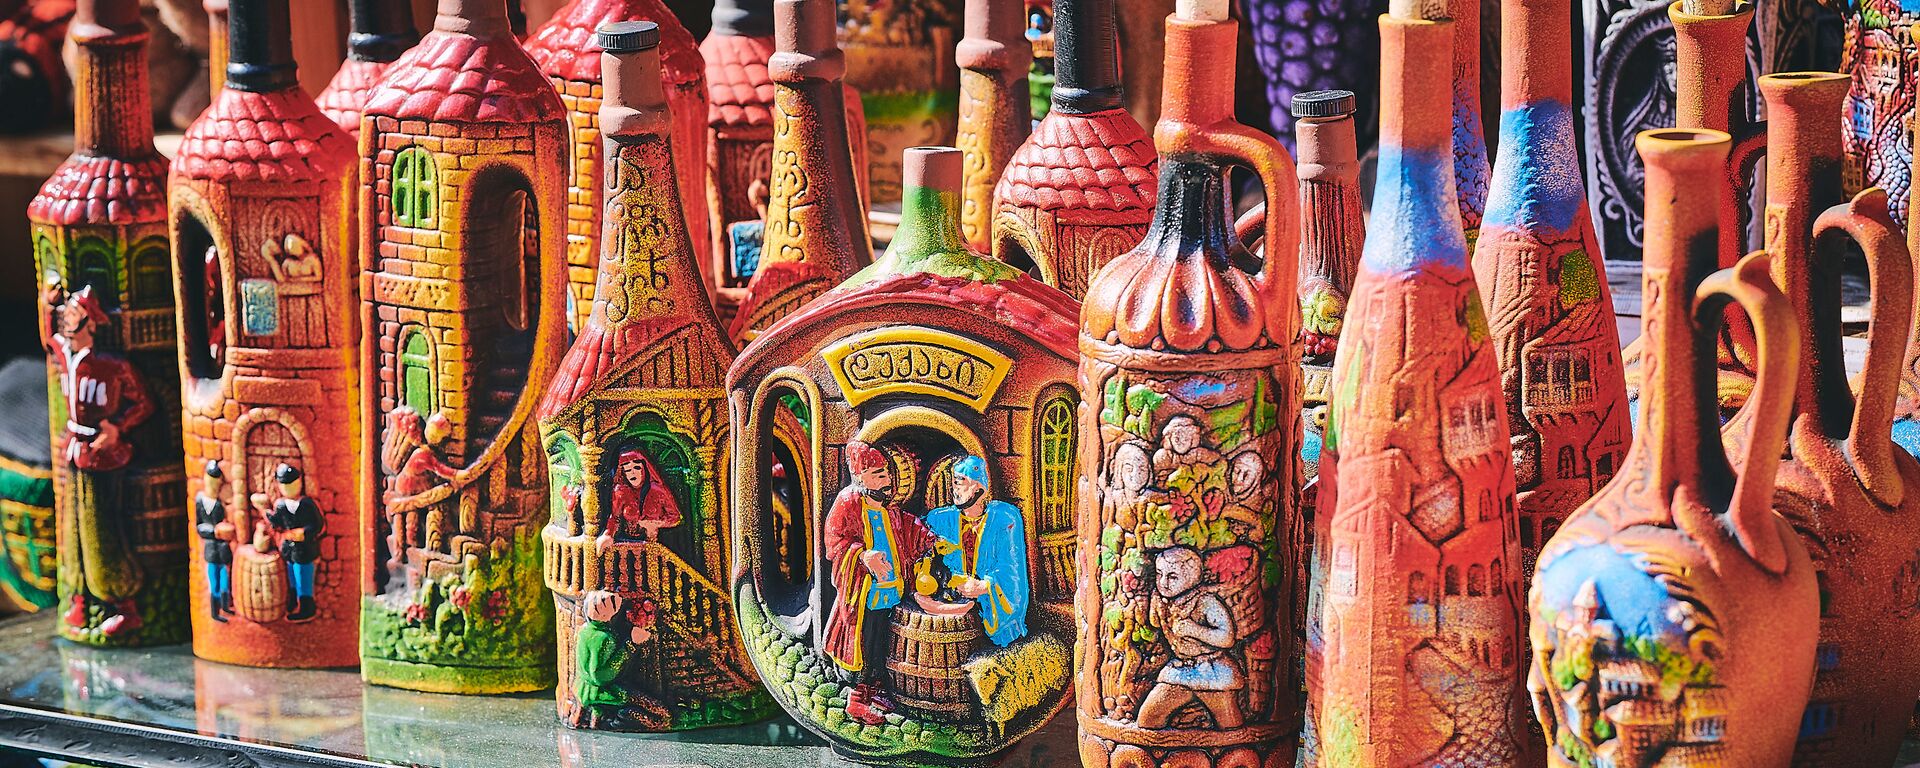 Бутылки с национальными узорами из керамики с грузинским вином - Sputnik Грузия, 1920, 11.12.2019